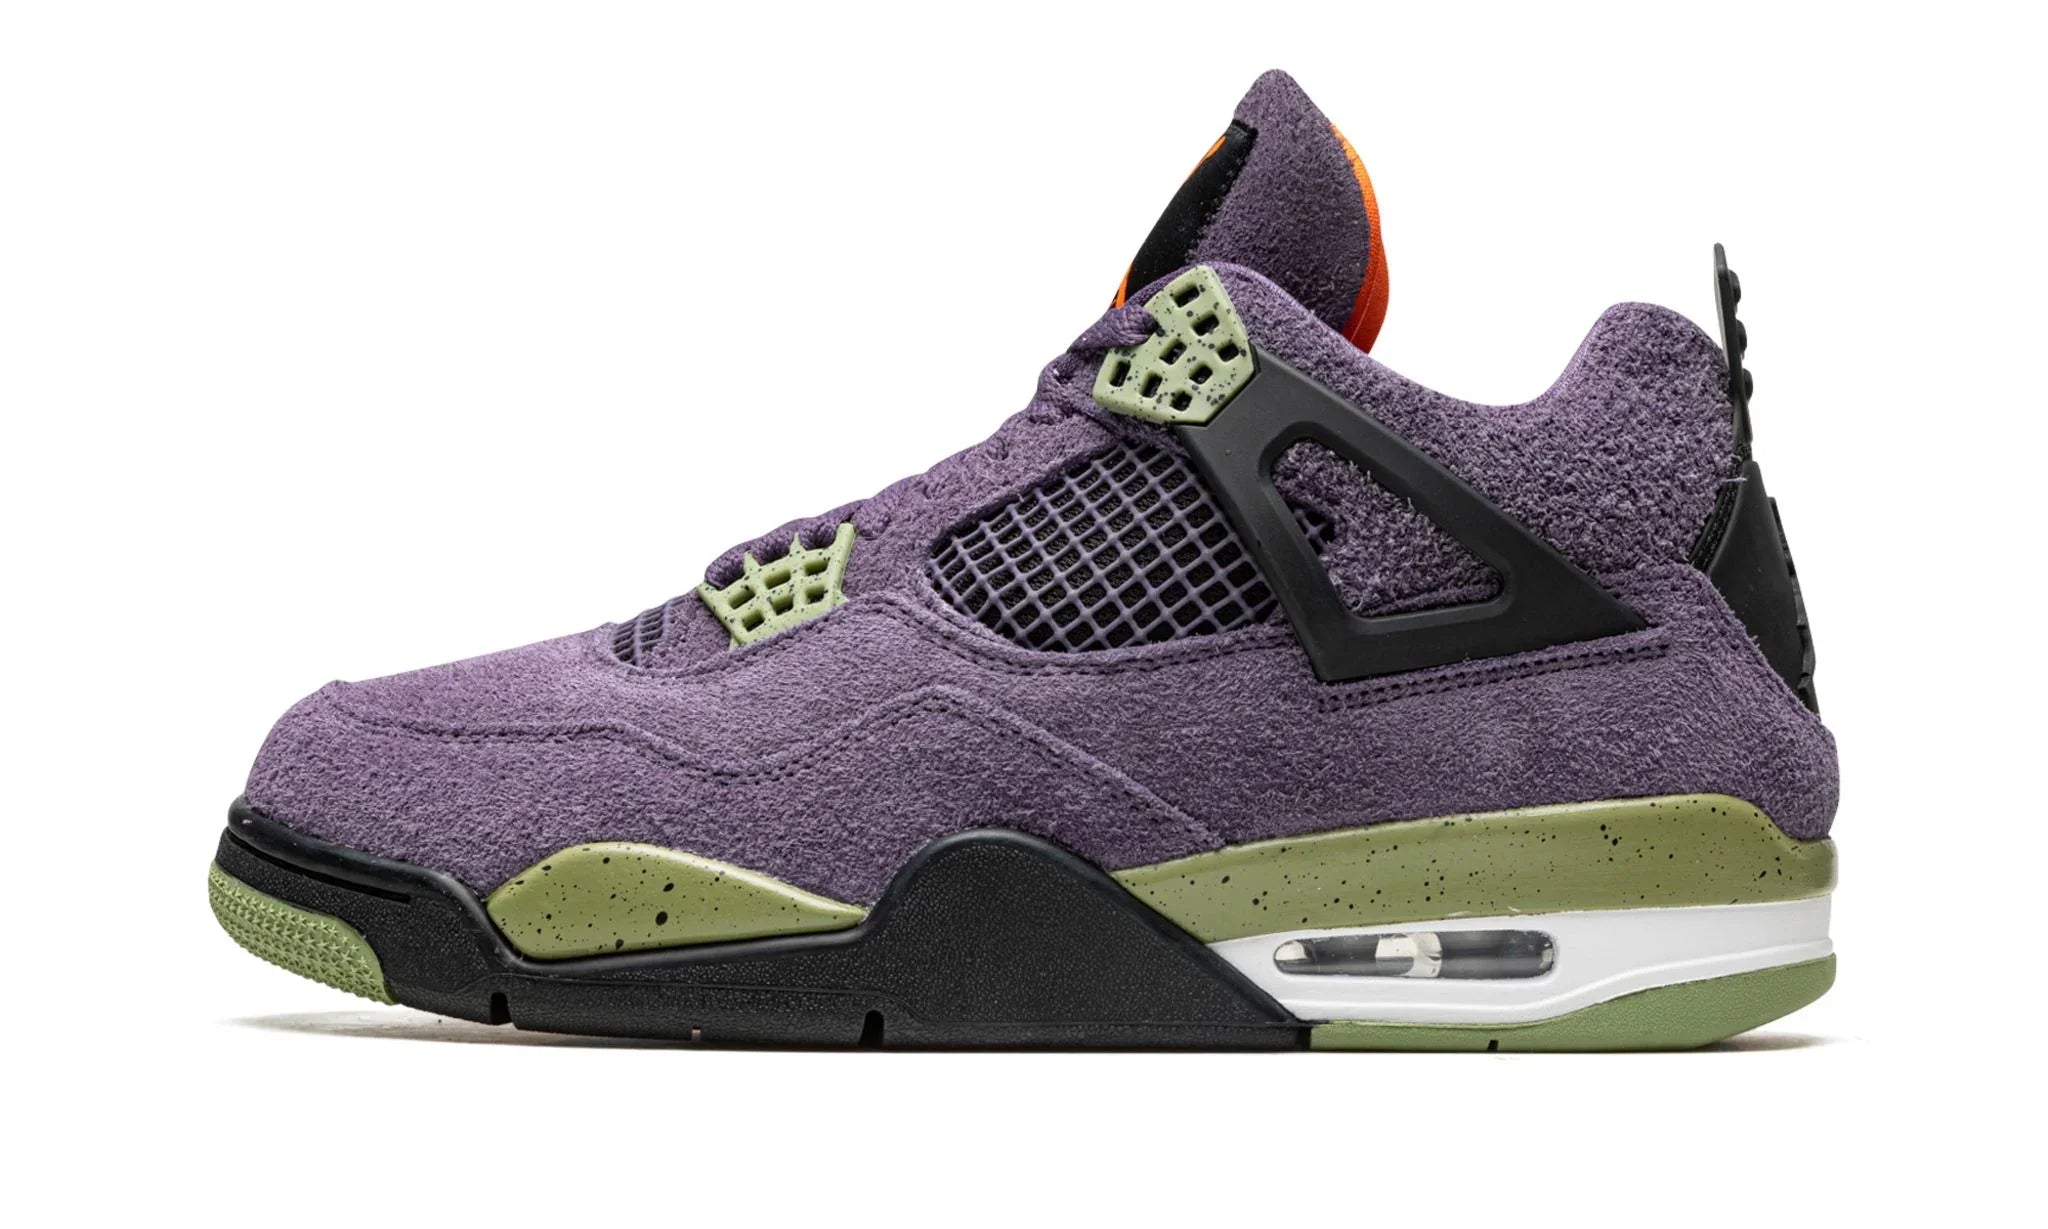 Jordan 4 "Canyon Purple" (W) - AQ9129-500 - Sneakers